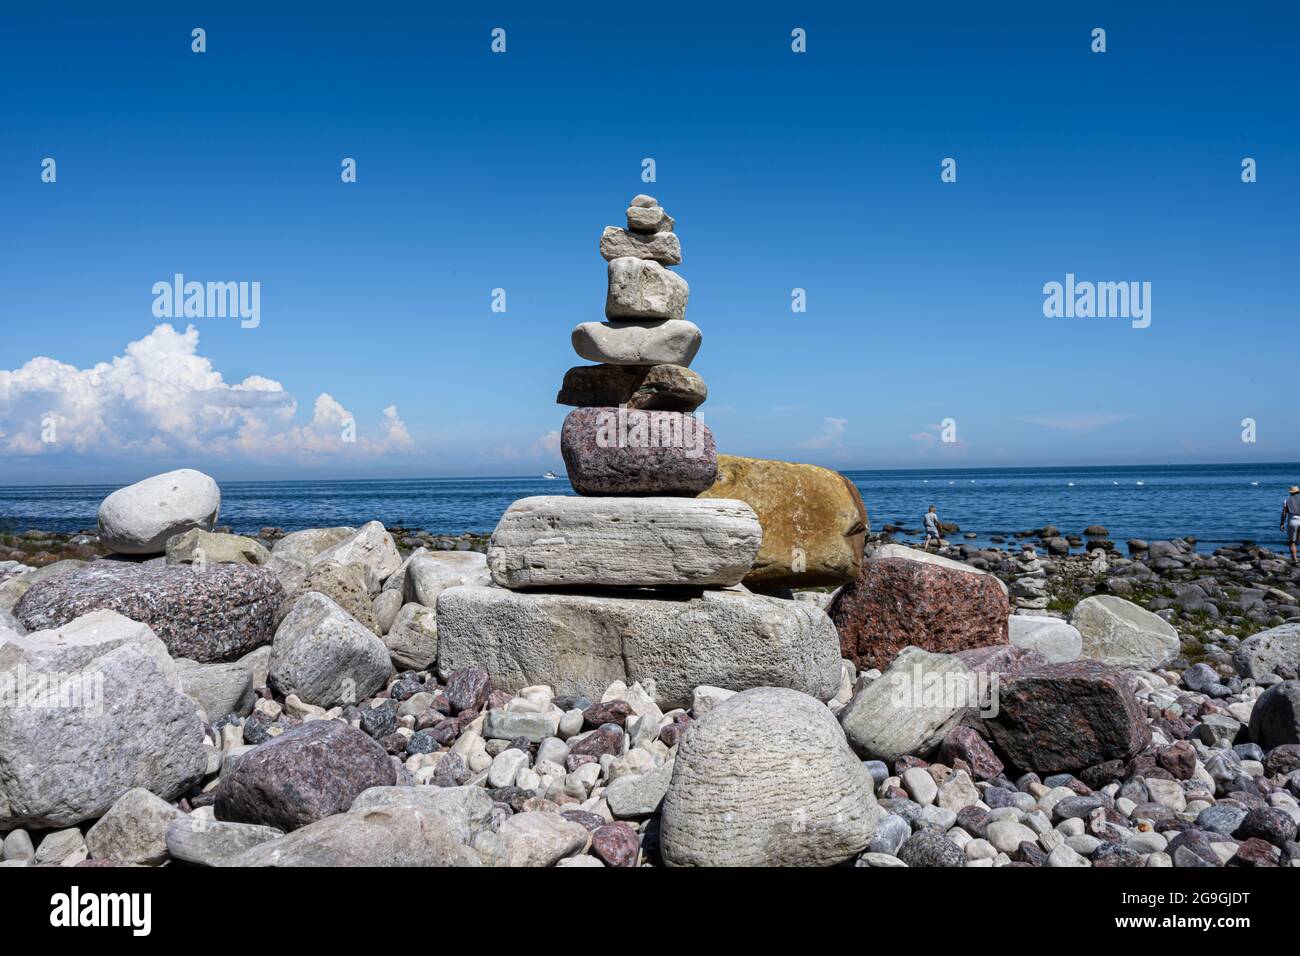 Une pile de pierres sur une plage. Photo de l'île d'Oland, en mer Baltique Banque D'Images